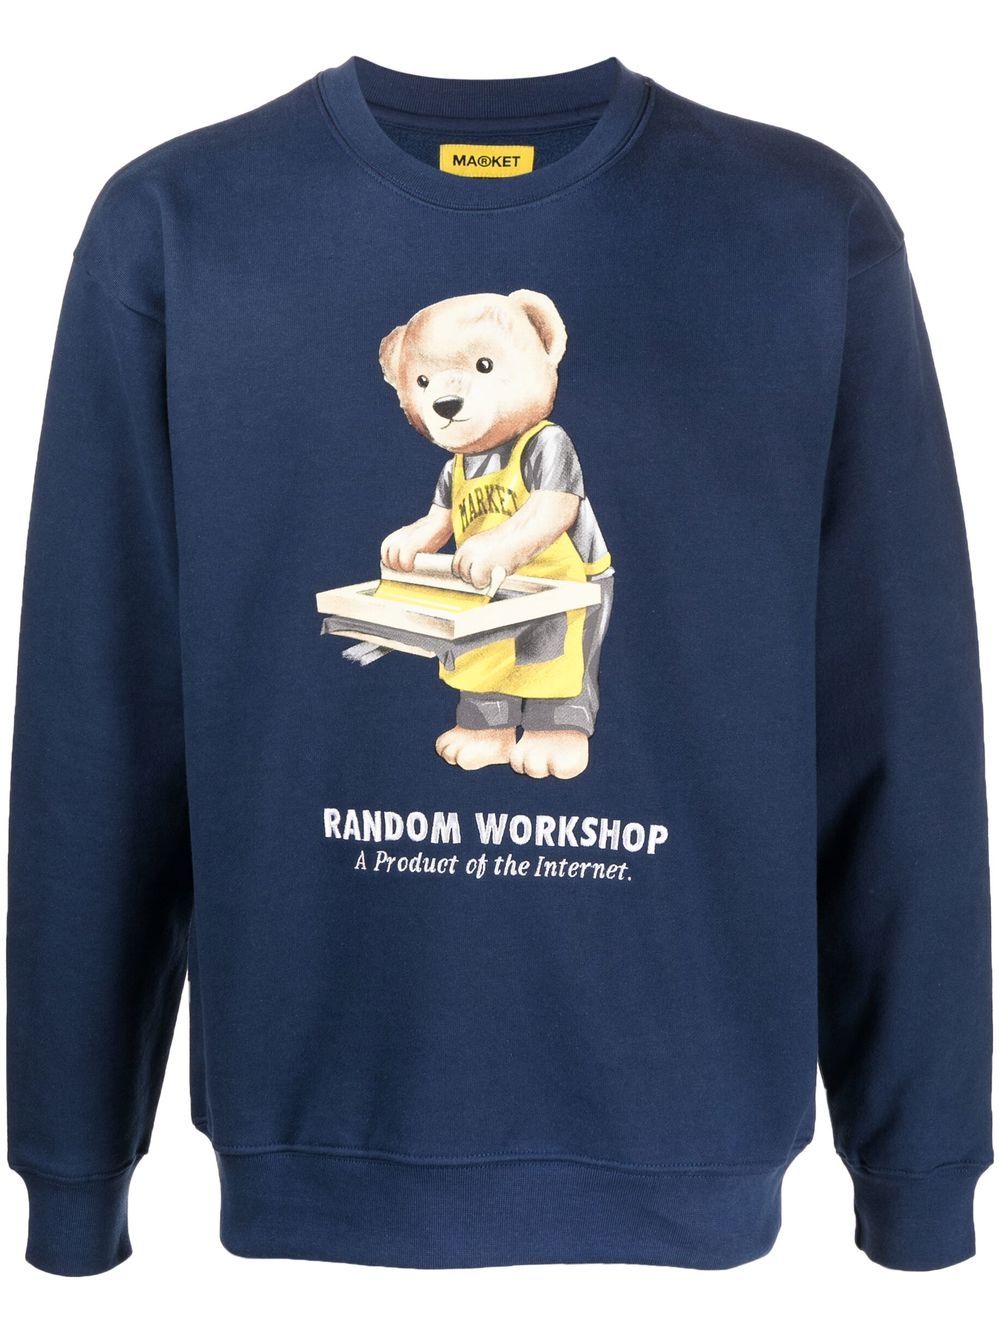 MARKET Sweatshirt mit "Random Workshop"-Print - Blau von MARKET